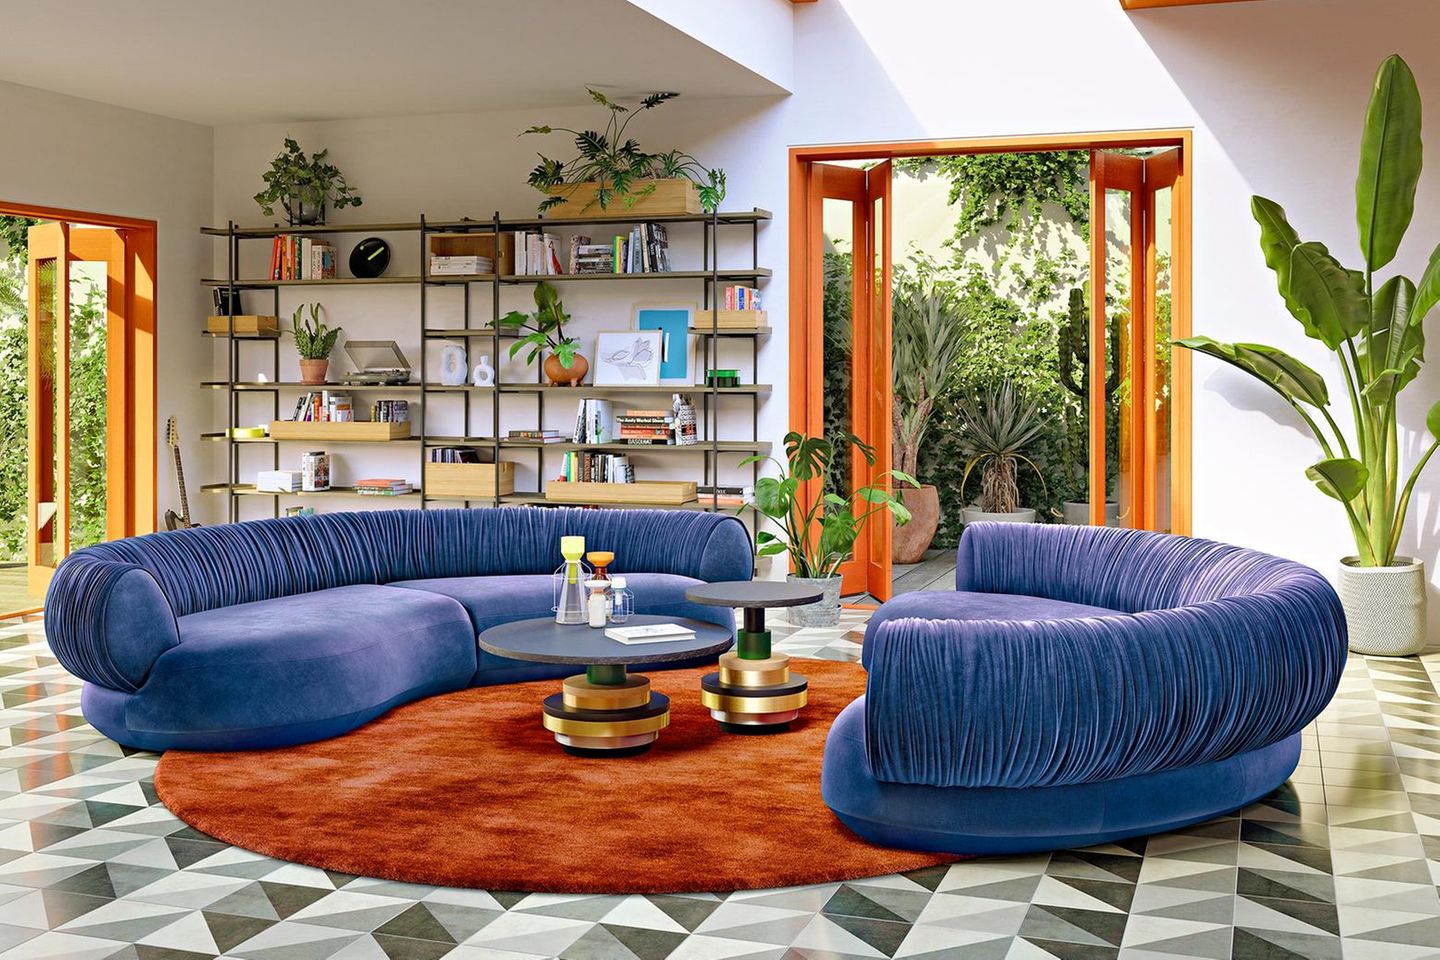 Sofa "Nanami" von Bretz in Lavendel in einem Raum mit gemustertem Boden und orangefarbenen Elementen